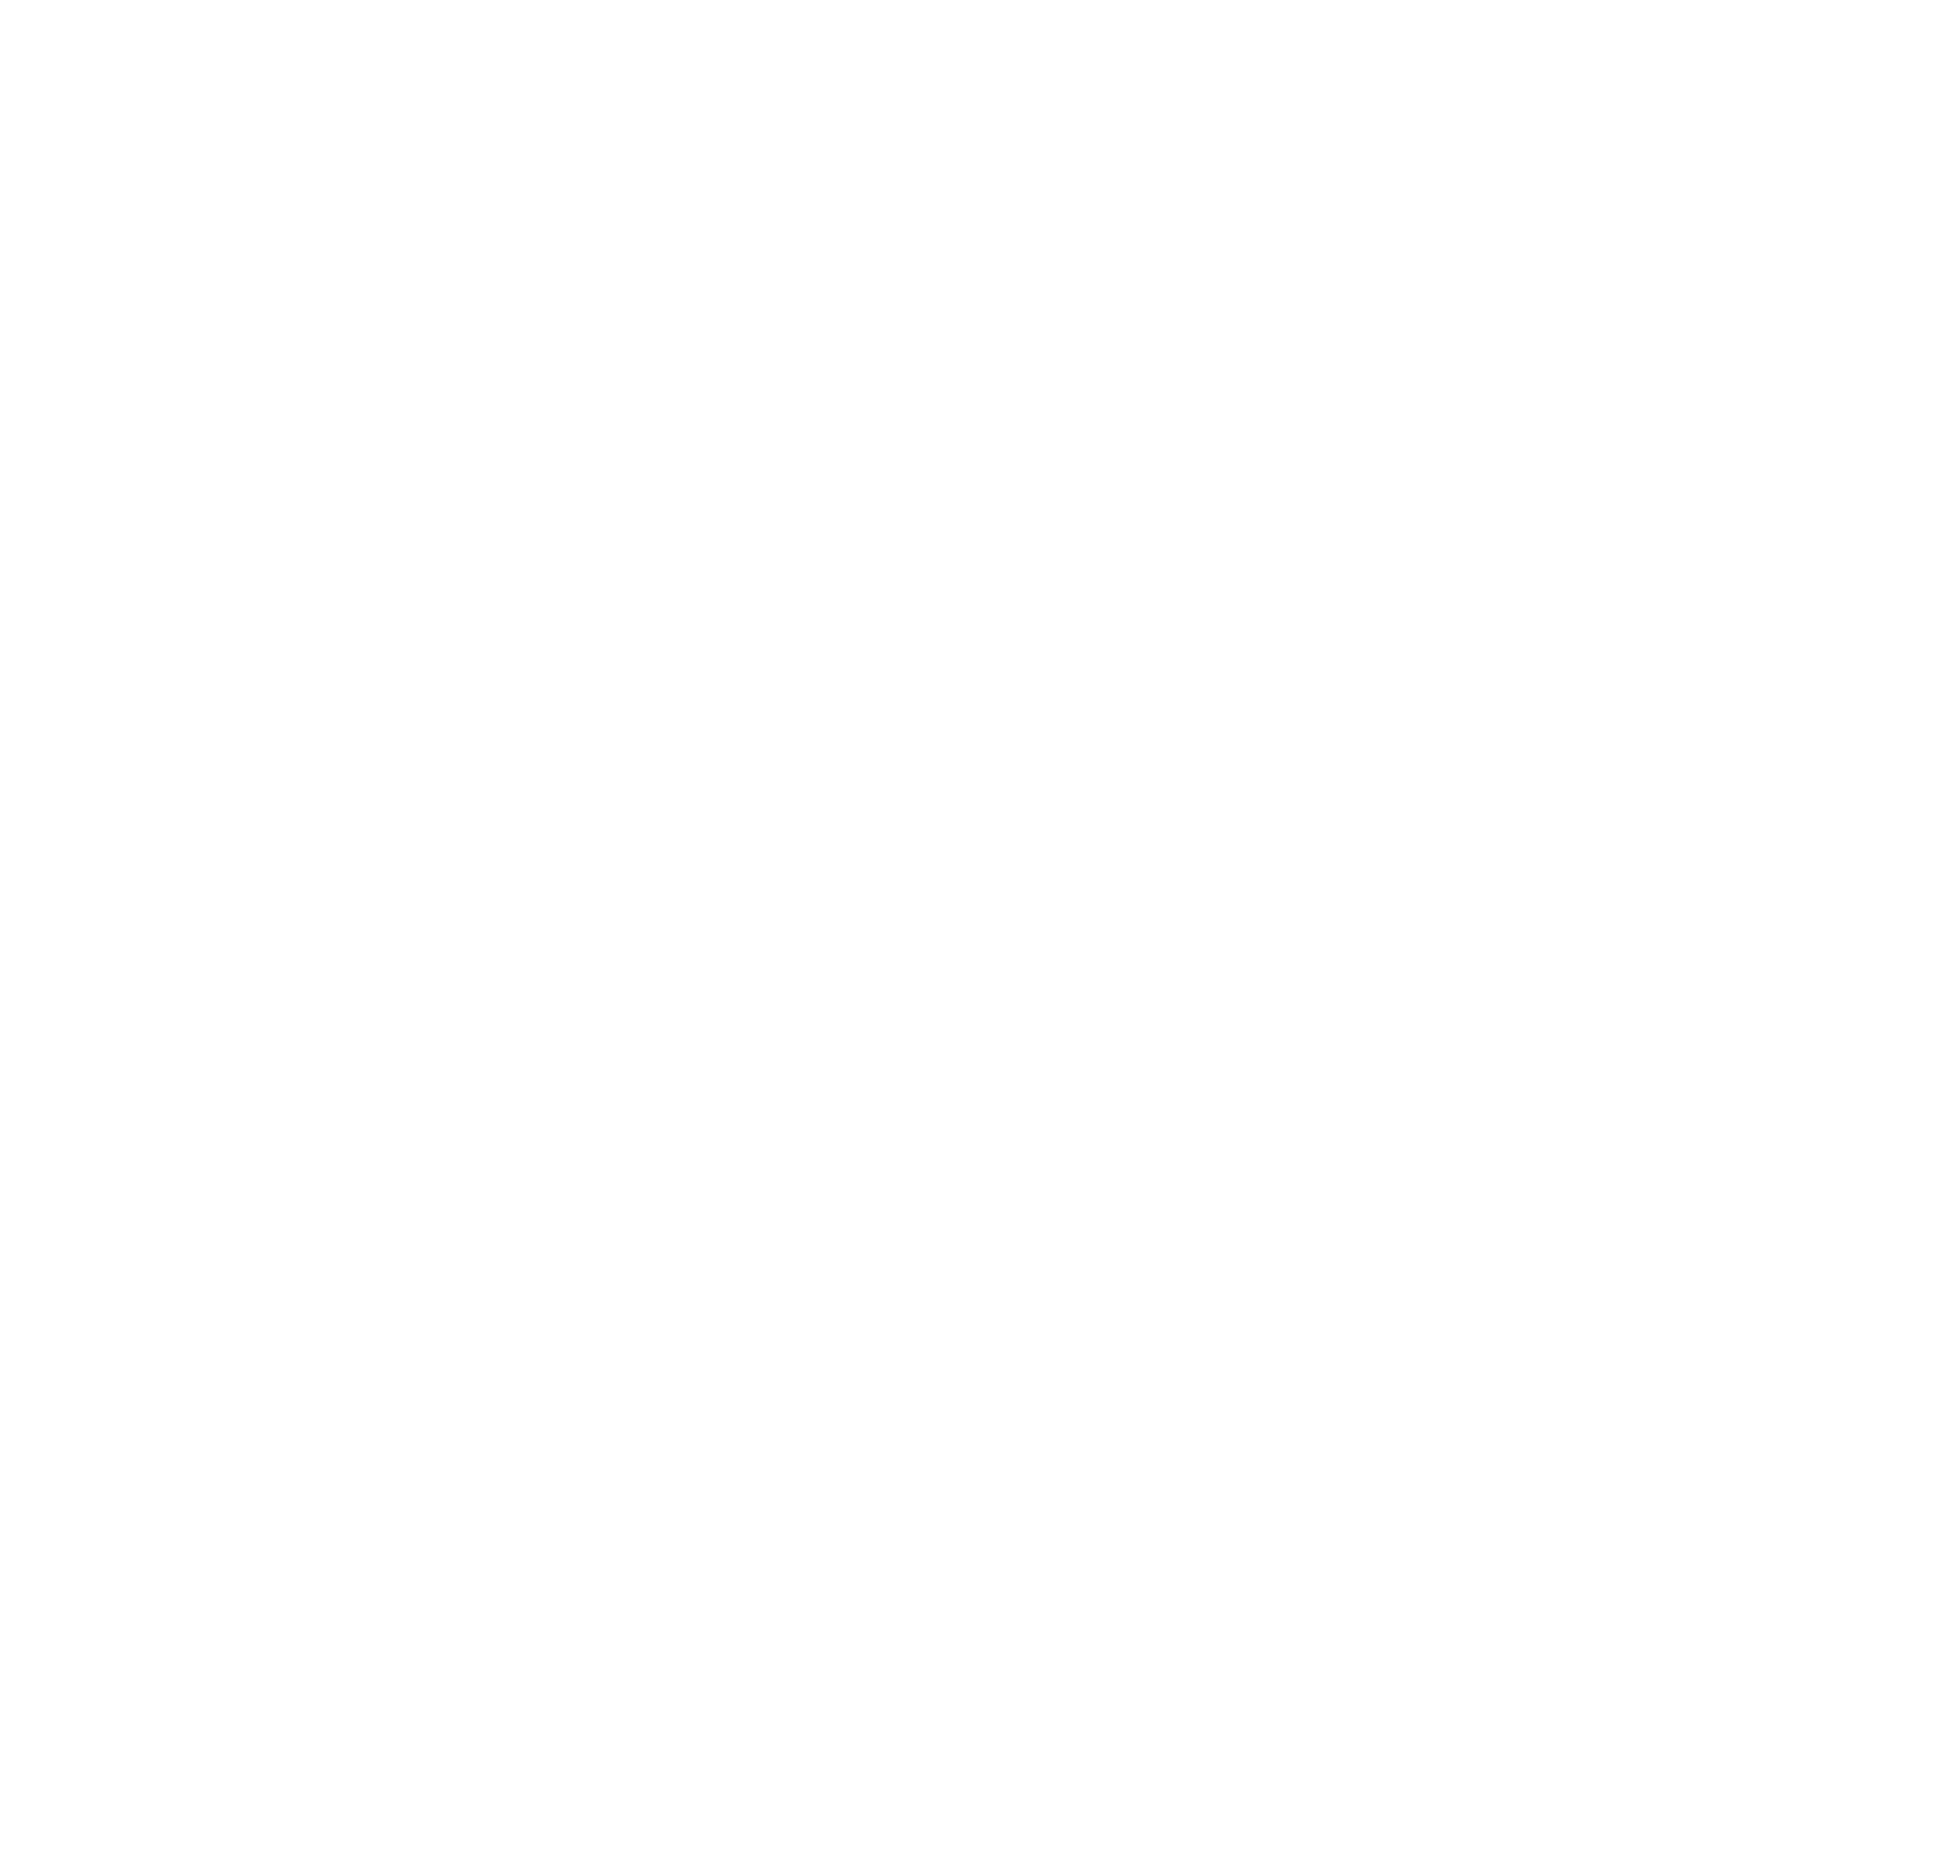 sucessos_criativos_quadrado_cmyk_201712_monocromatico_negativo